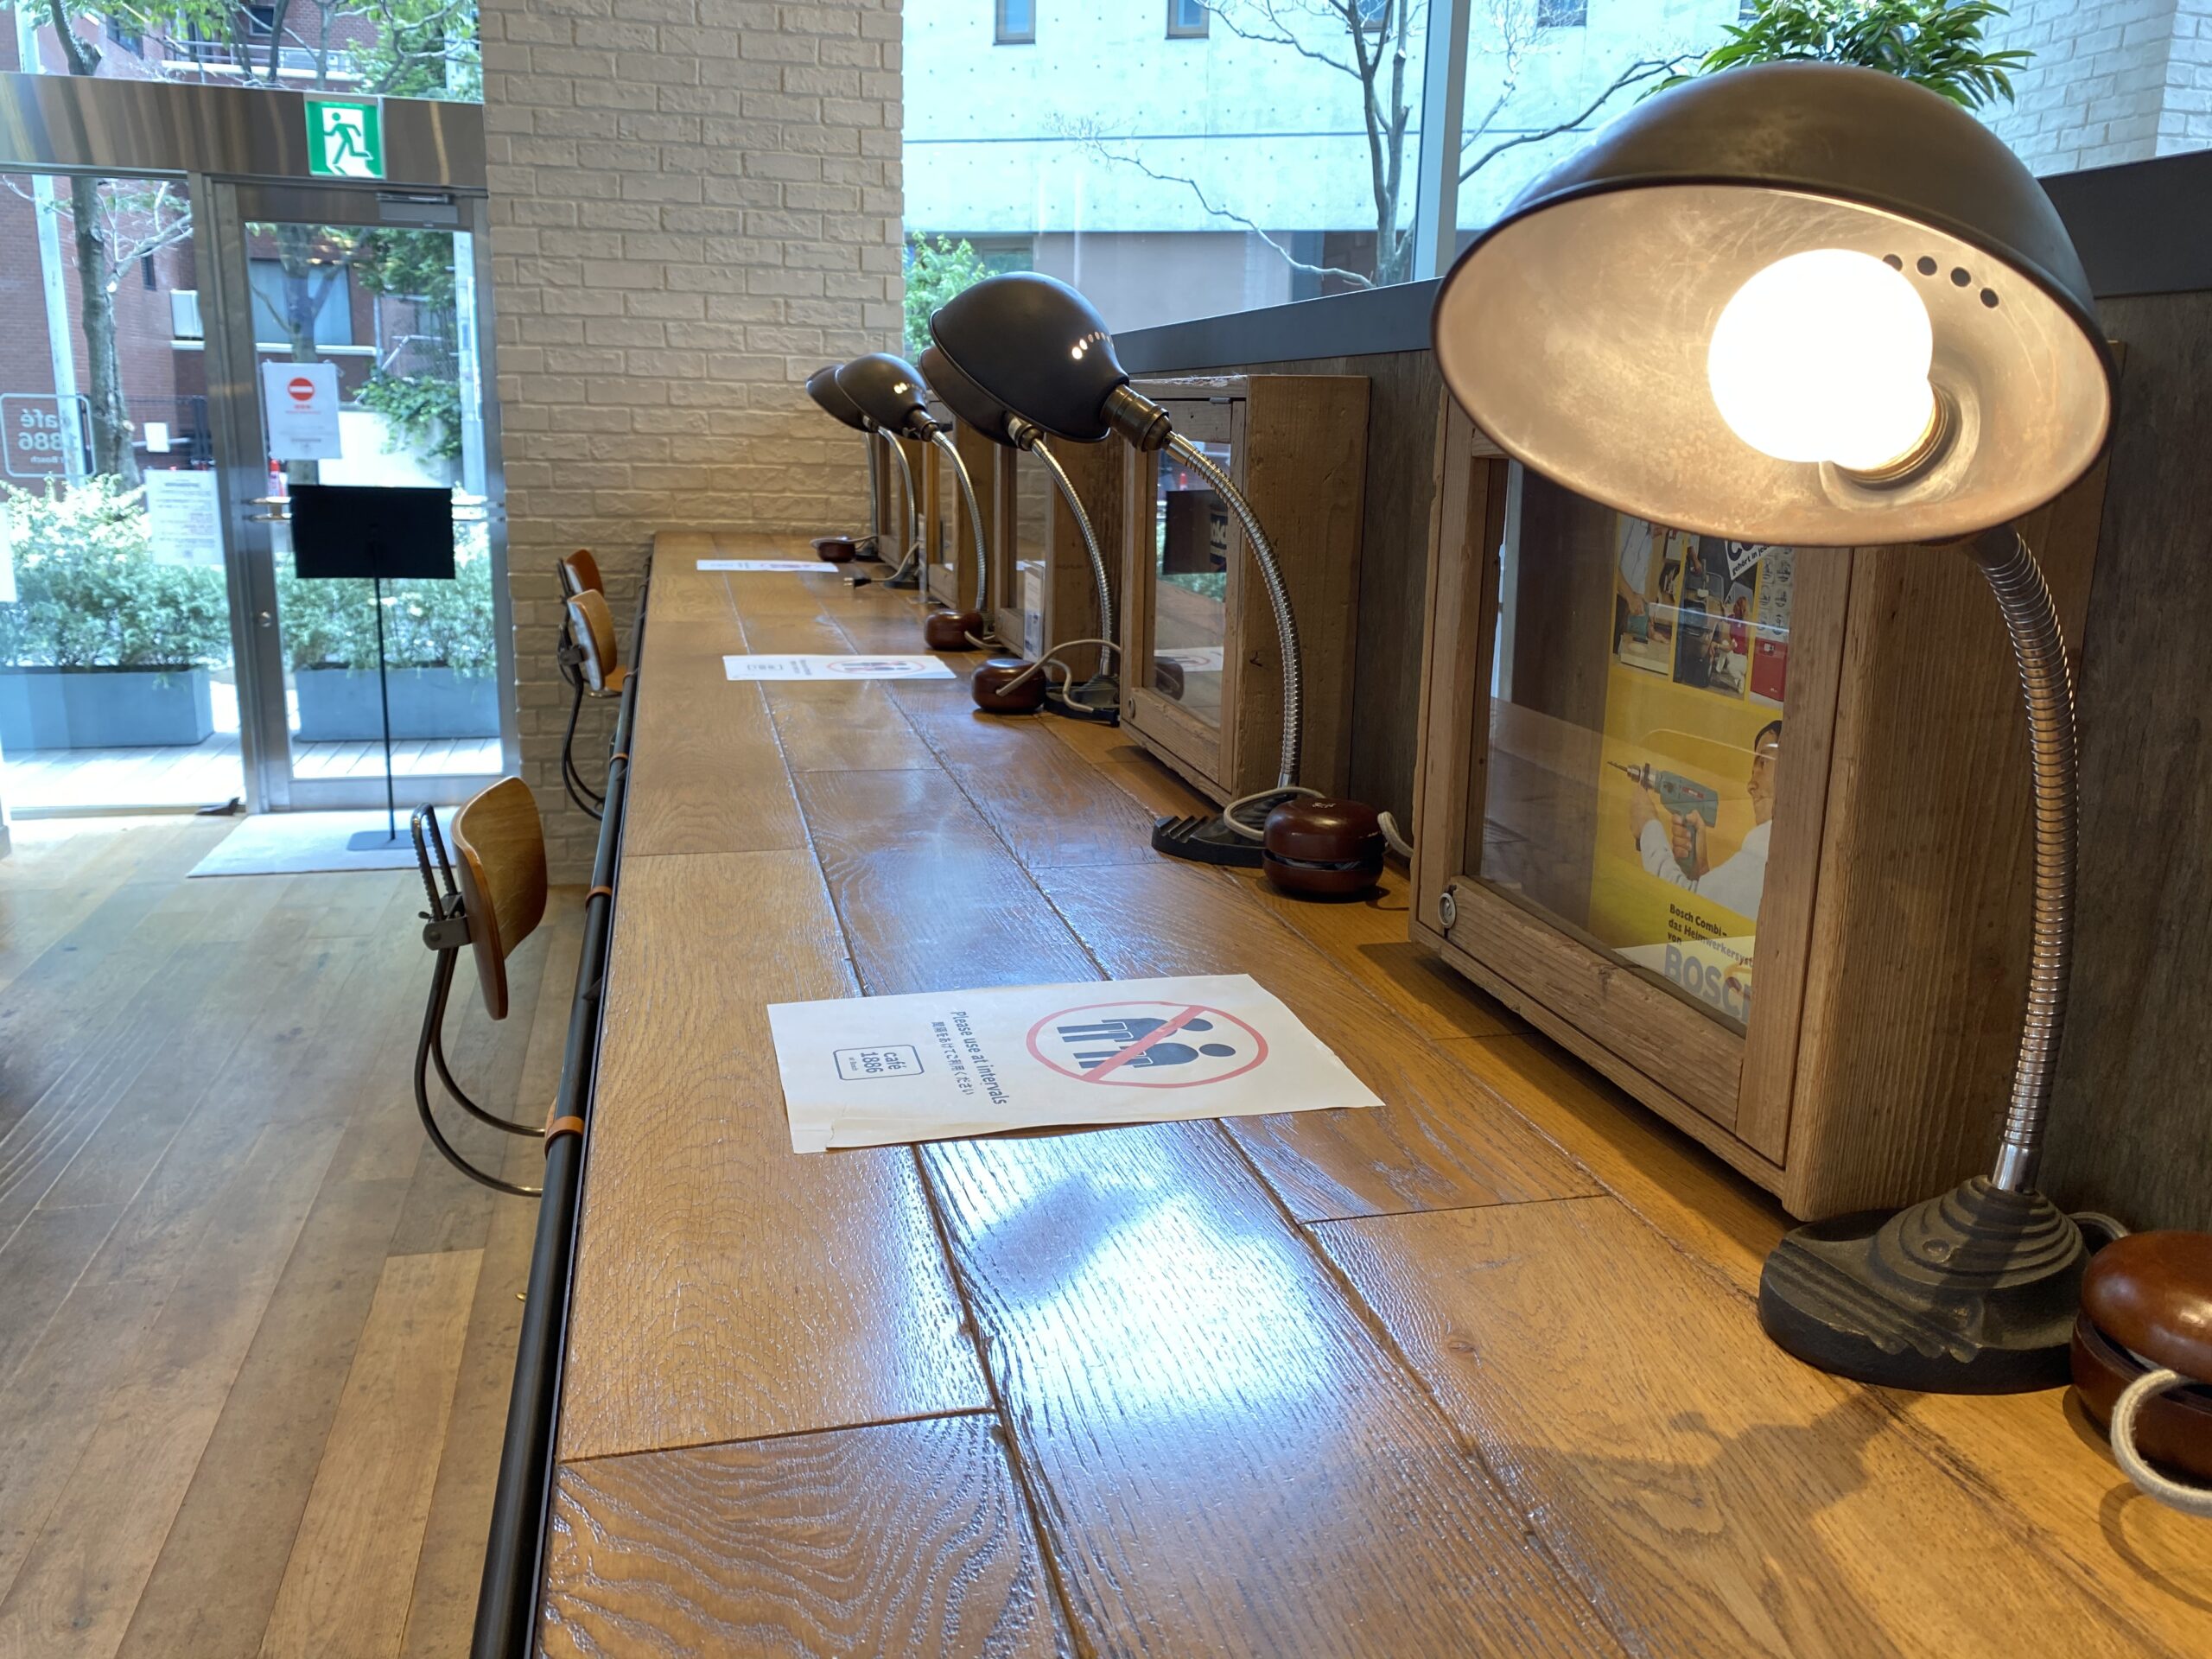 ブルートラベルエンジニア パソコン作業（プログラミング学習環境）におすすめのカフェ|渋谷 café 1886 at Bosch